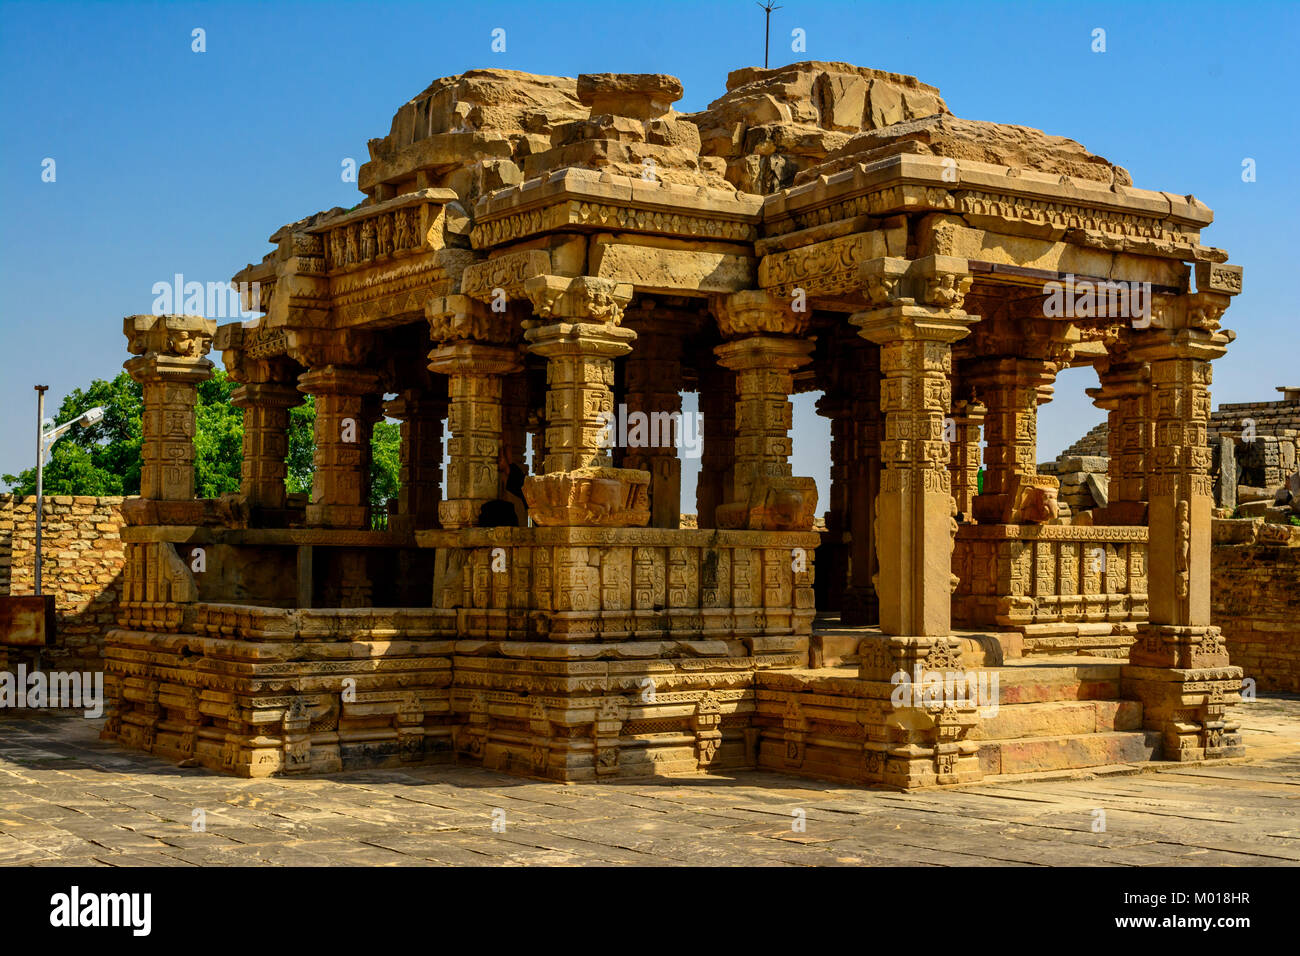 Padawali Temple Mandap, Hindu temple ruins Madhya pradesh, India Stock Photo